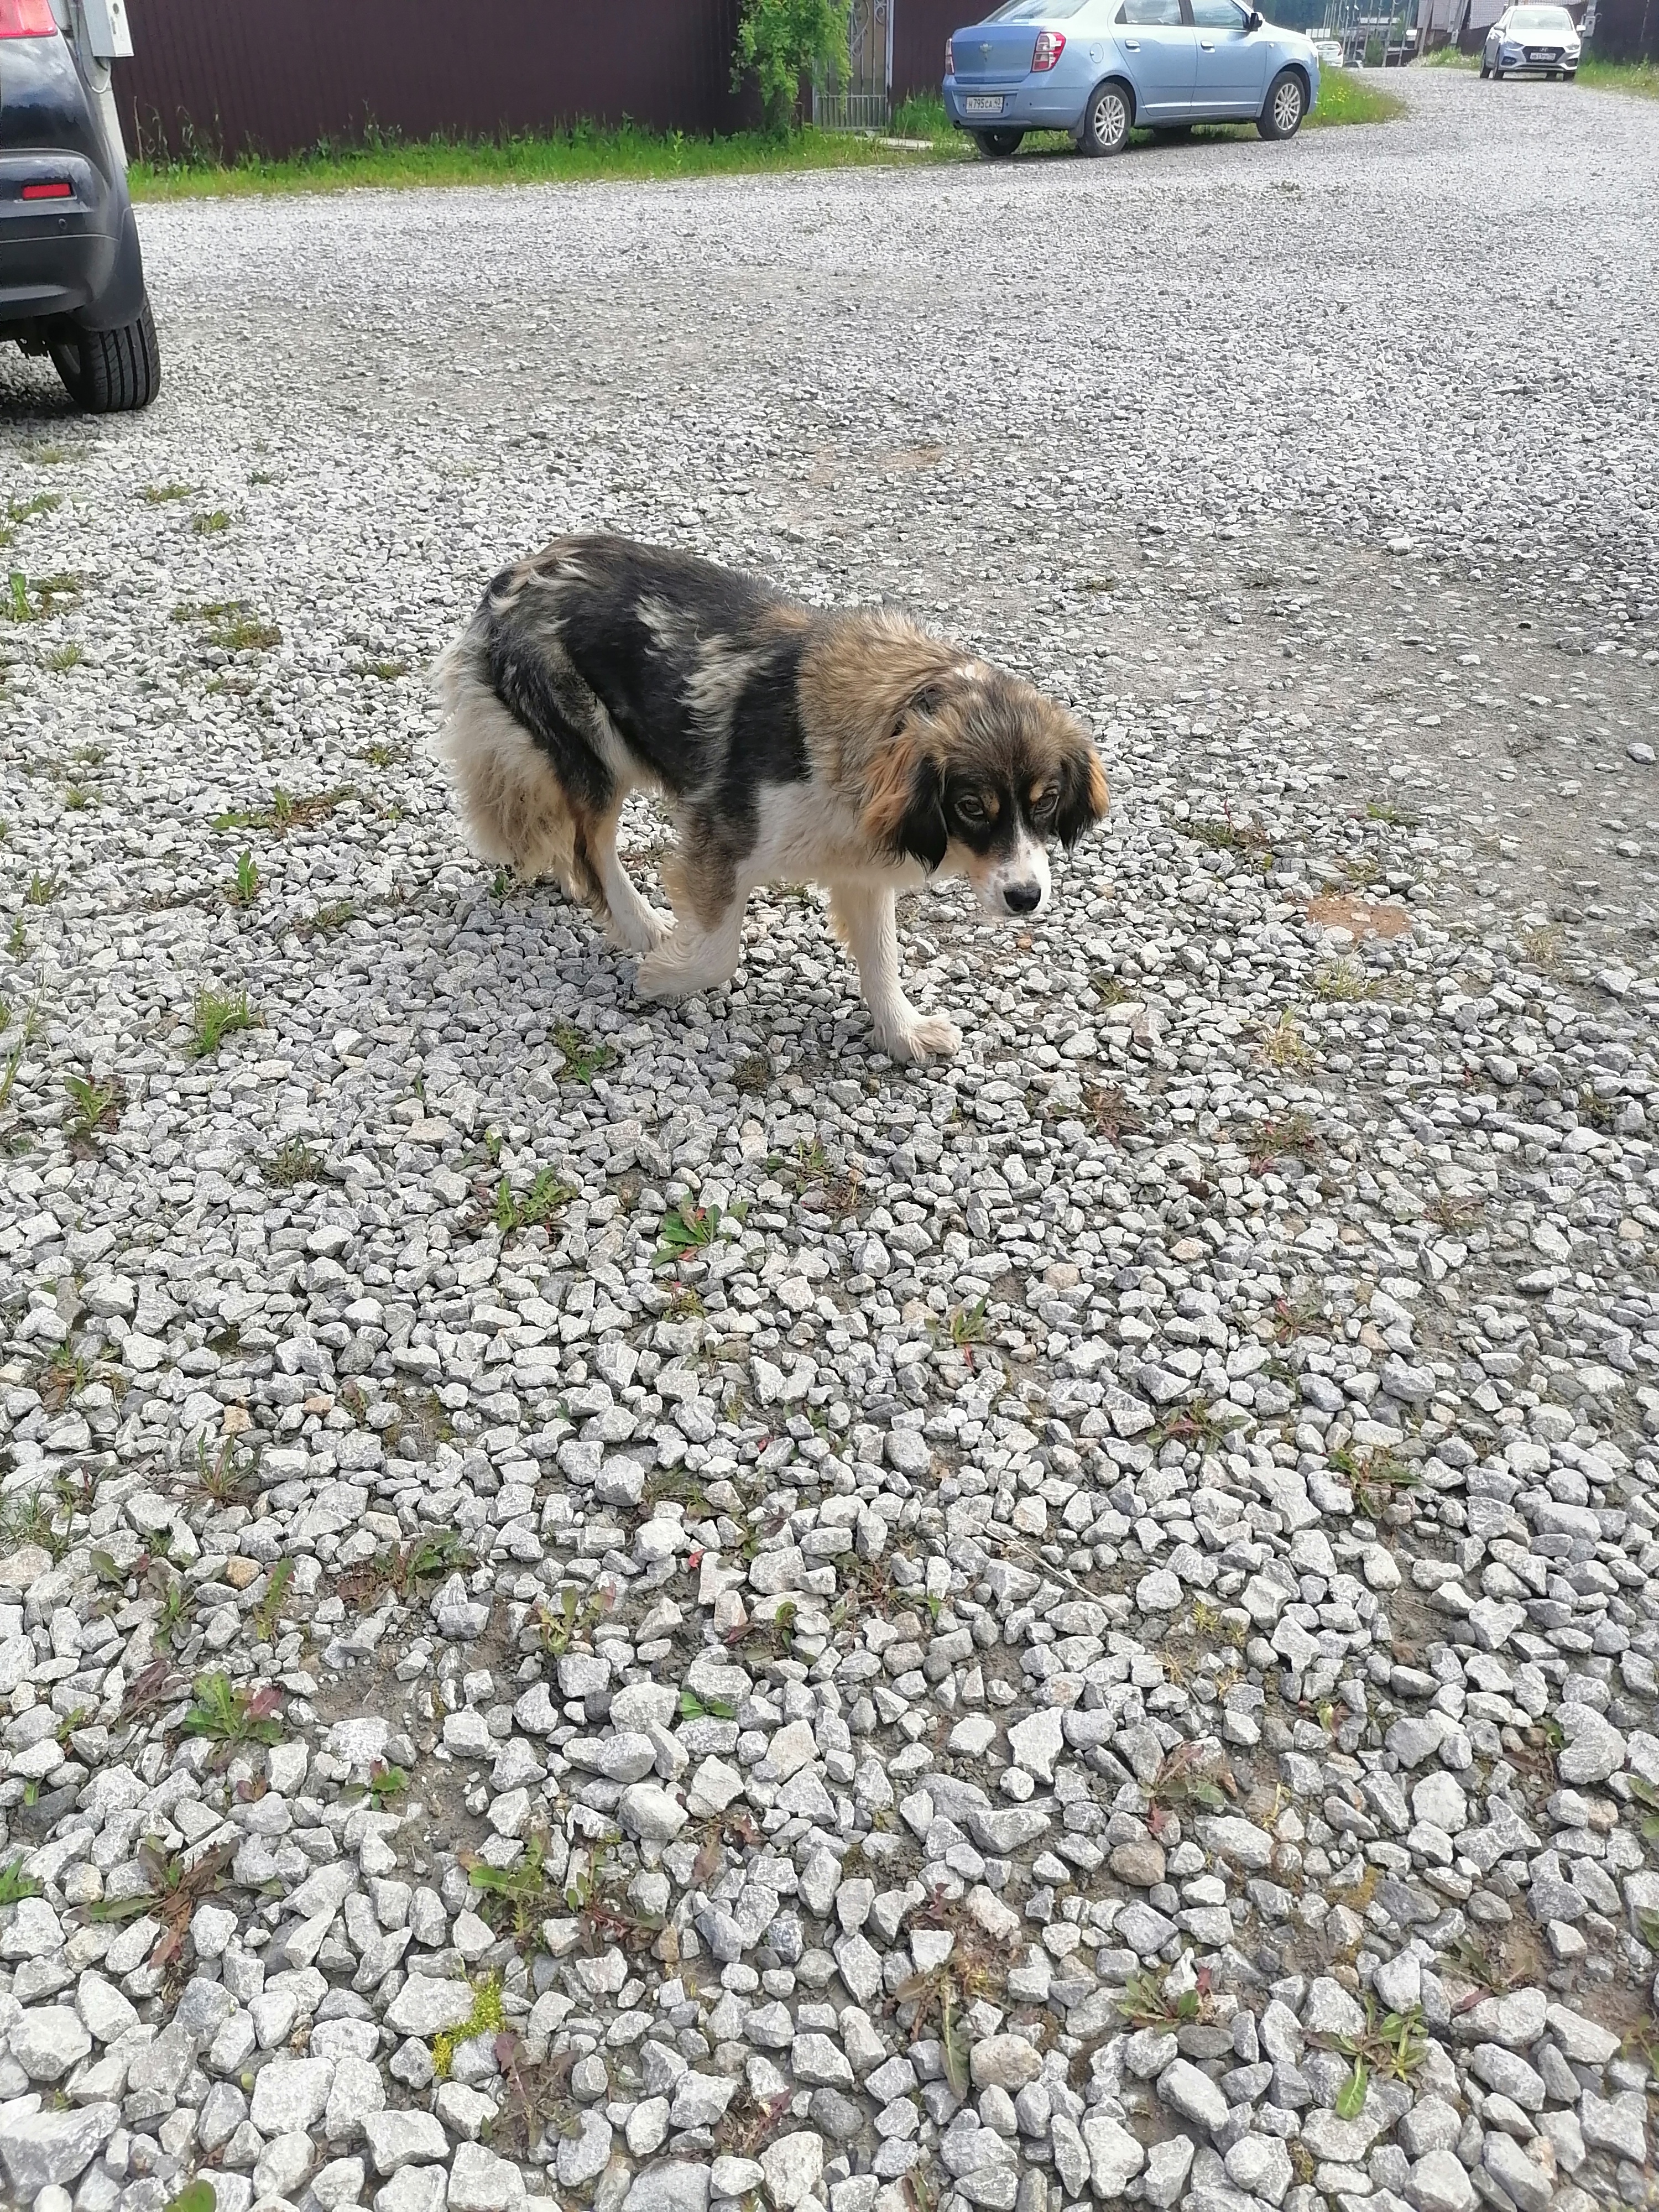 Найдена контактная трехцветная собака в Подольном